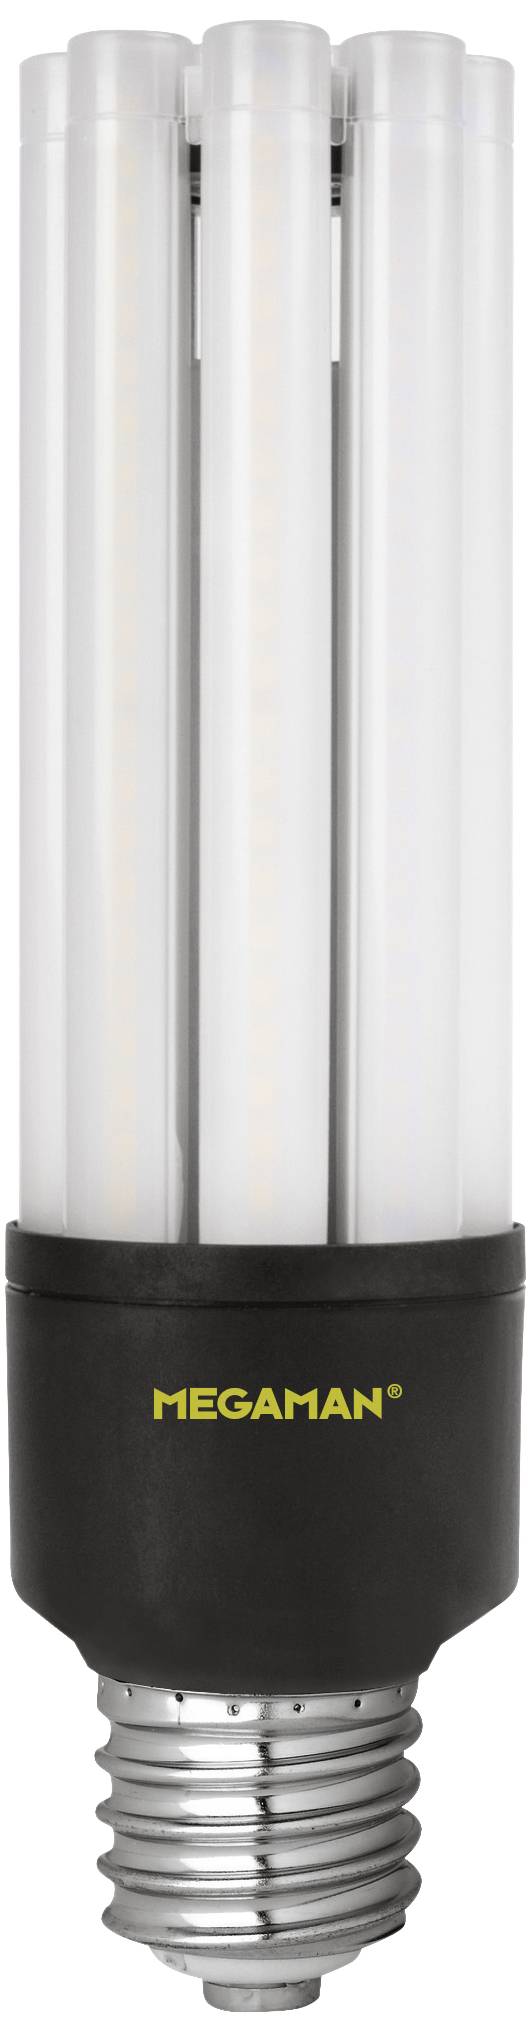 MEGAMAN LED-Lampe E40 5000K 1 Stück